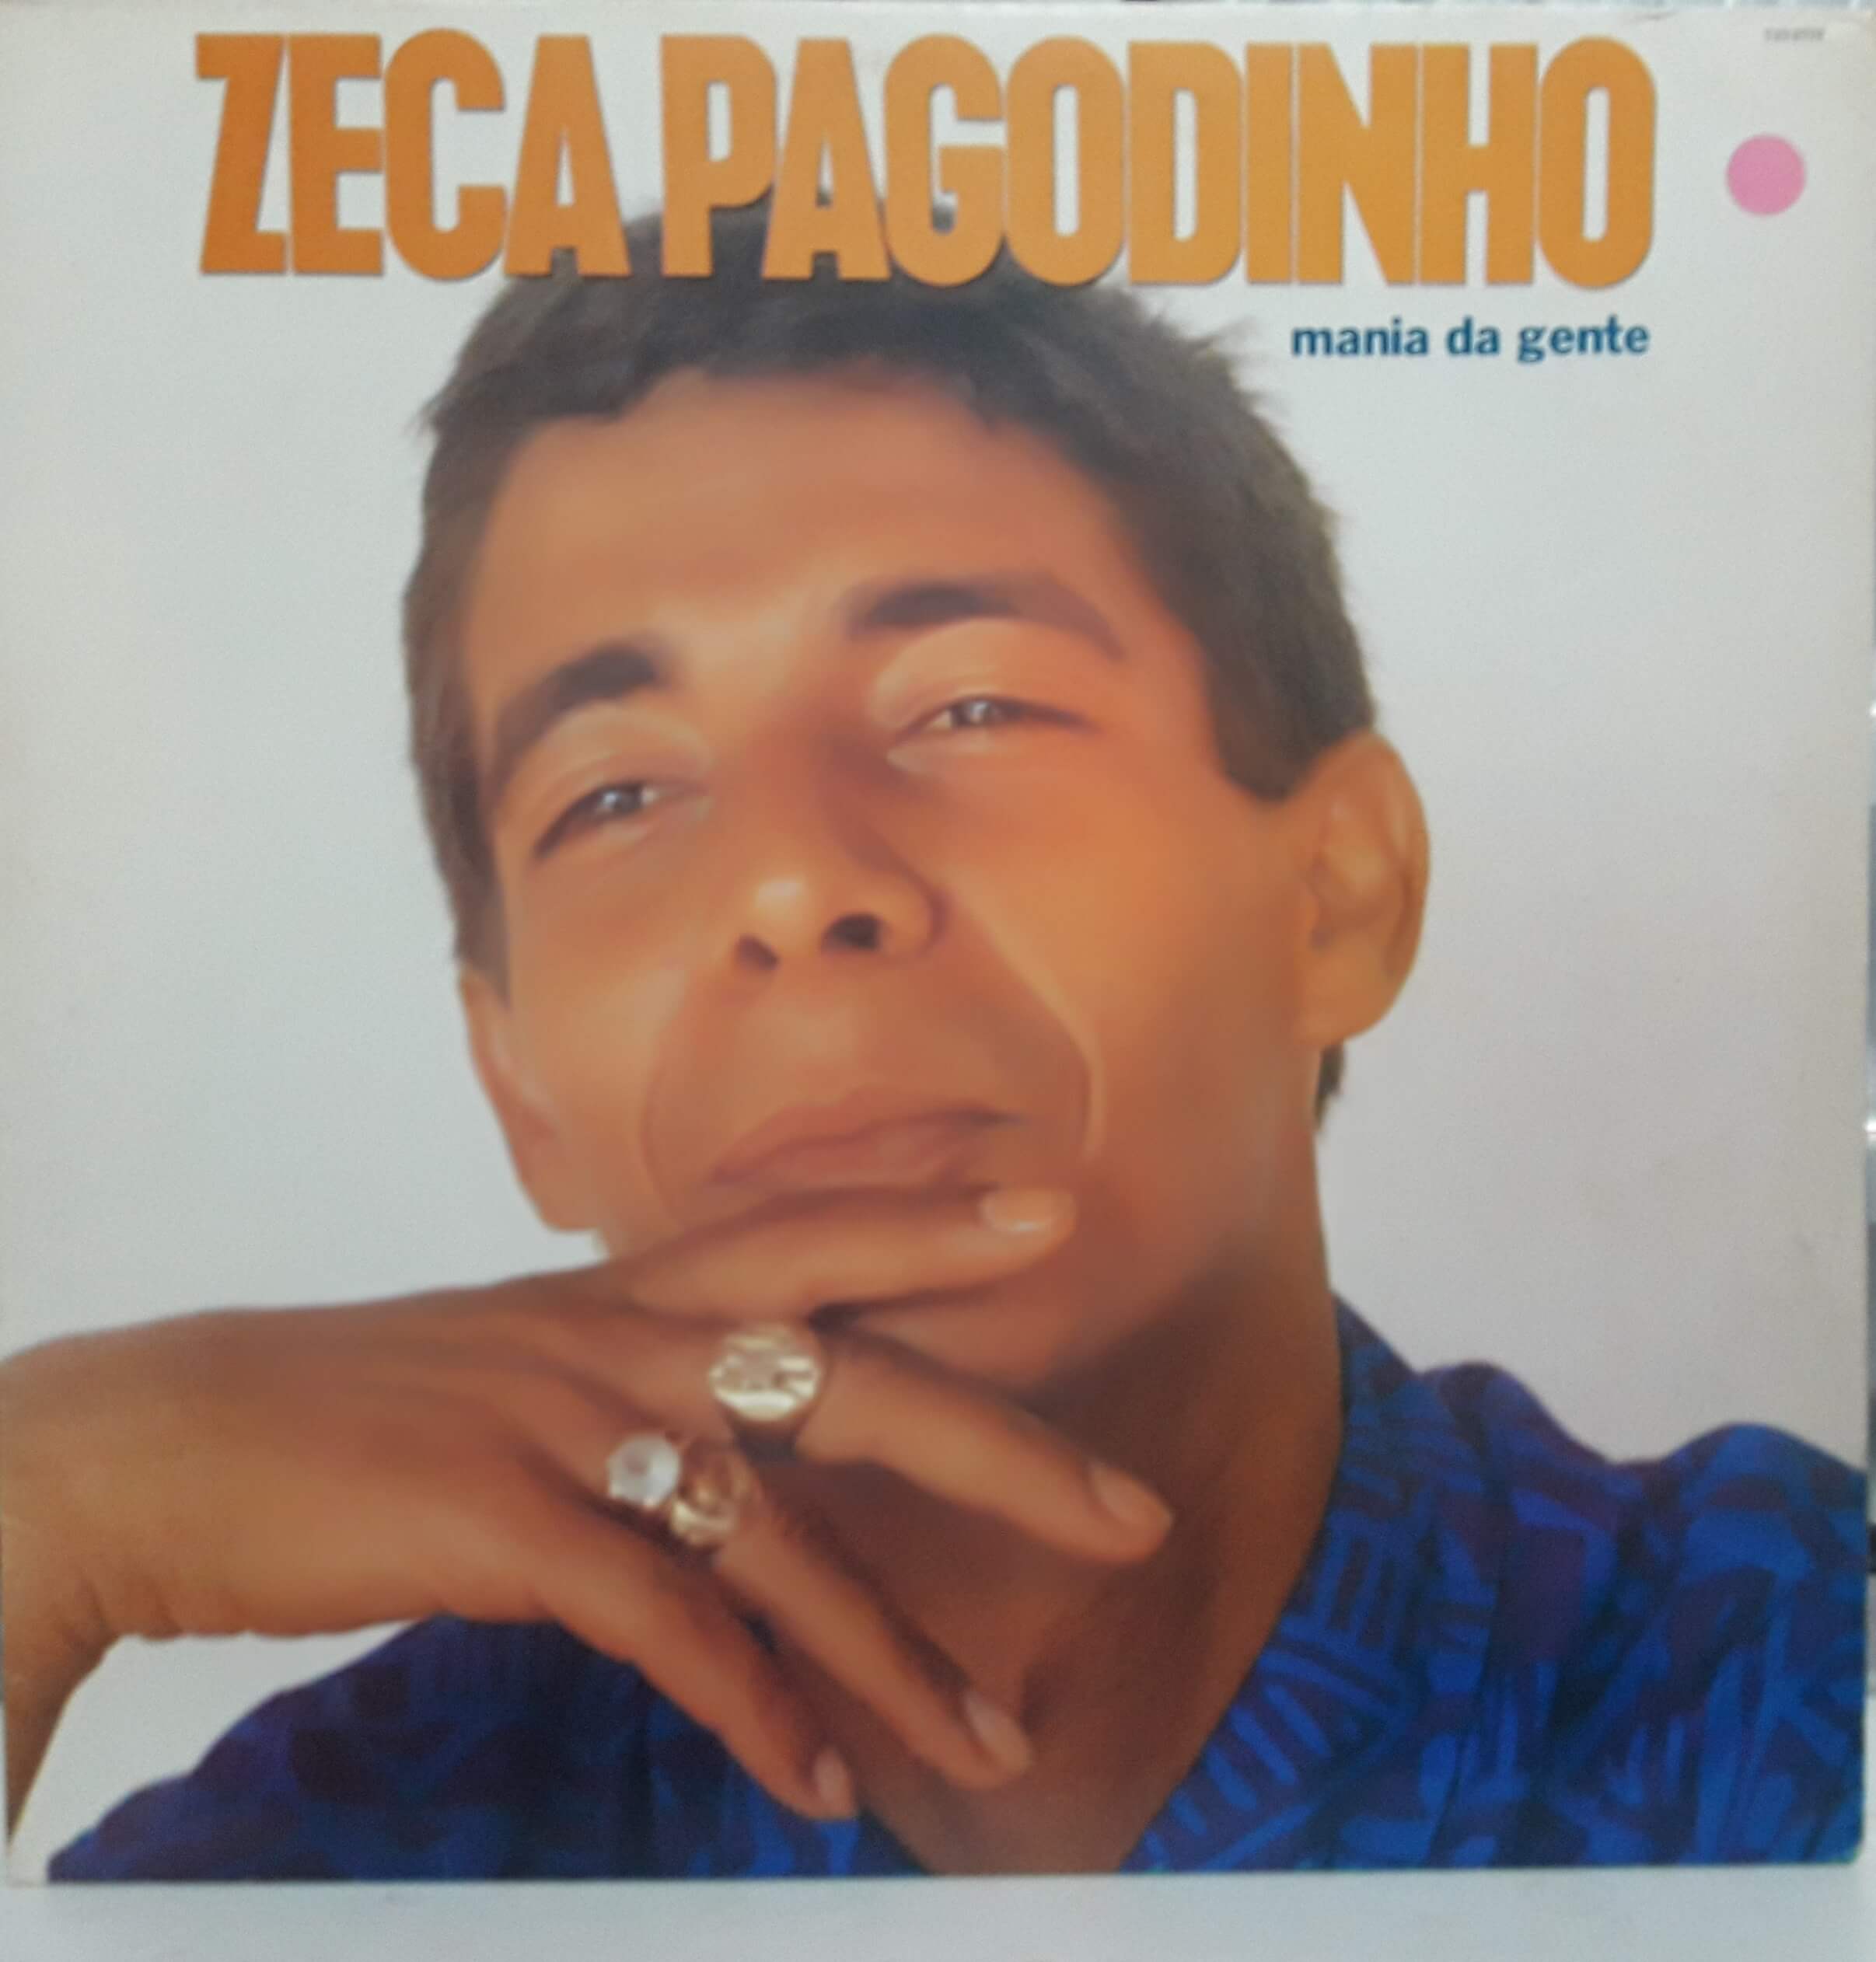 Zeca Pagodinho Mania Da Gente 1990 Bmg D Vinil Loja